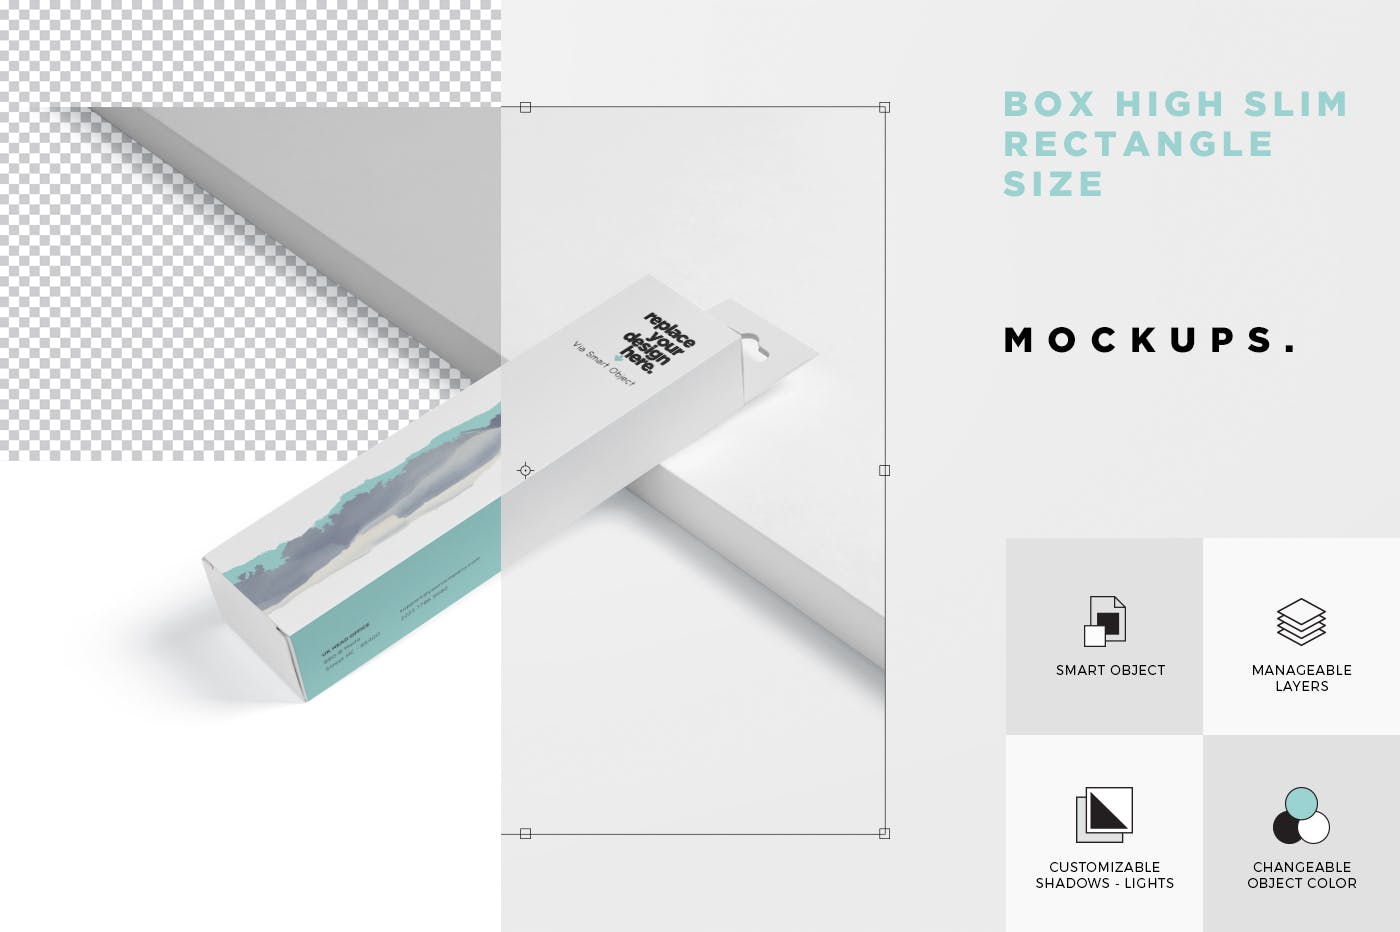 超薄矩形长条包装盒外观设计效果图16图库精选 Box Mockup PSDs – High Slim Rectangle Size Hanger插图(6)